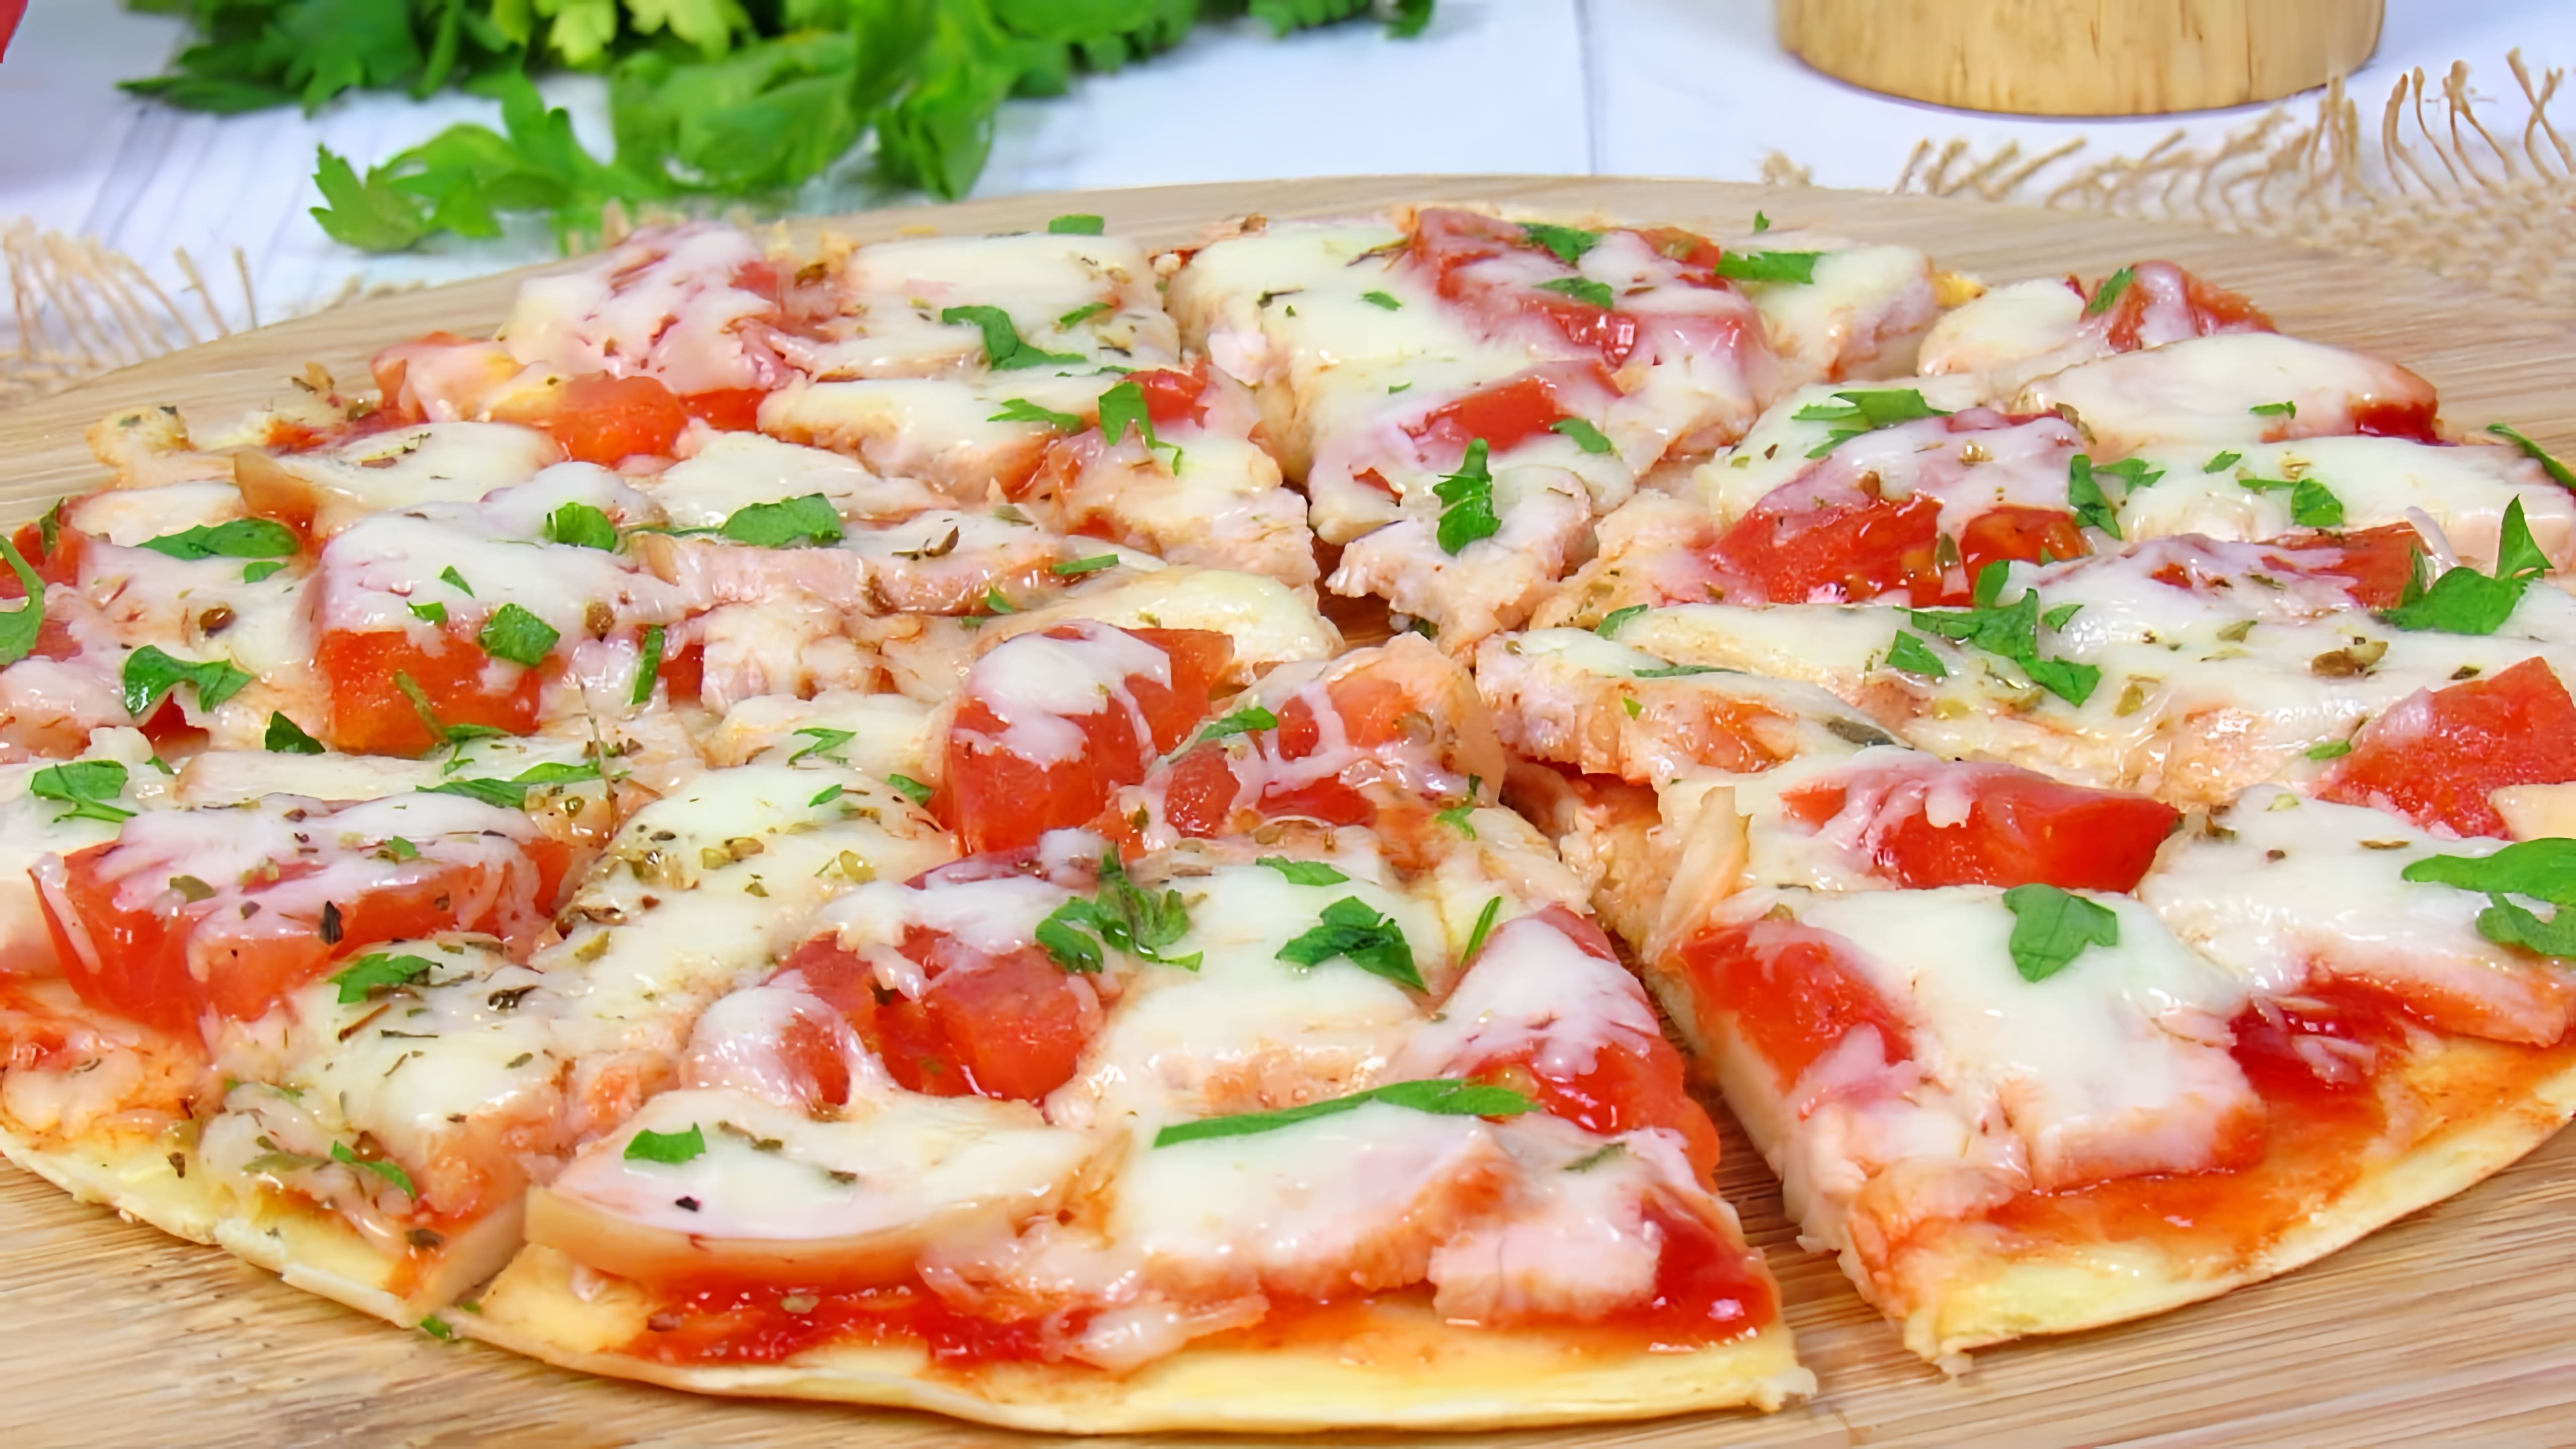 В этом видео демонстрируется рецепт приготовления пиццы на сковороде за 10 минут